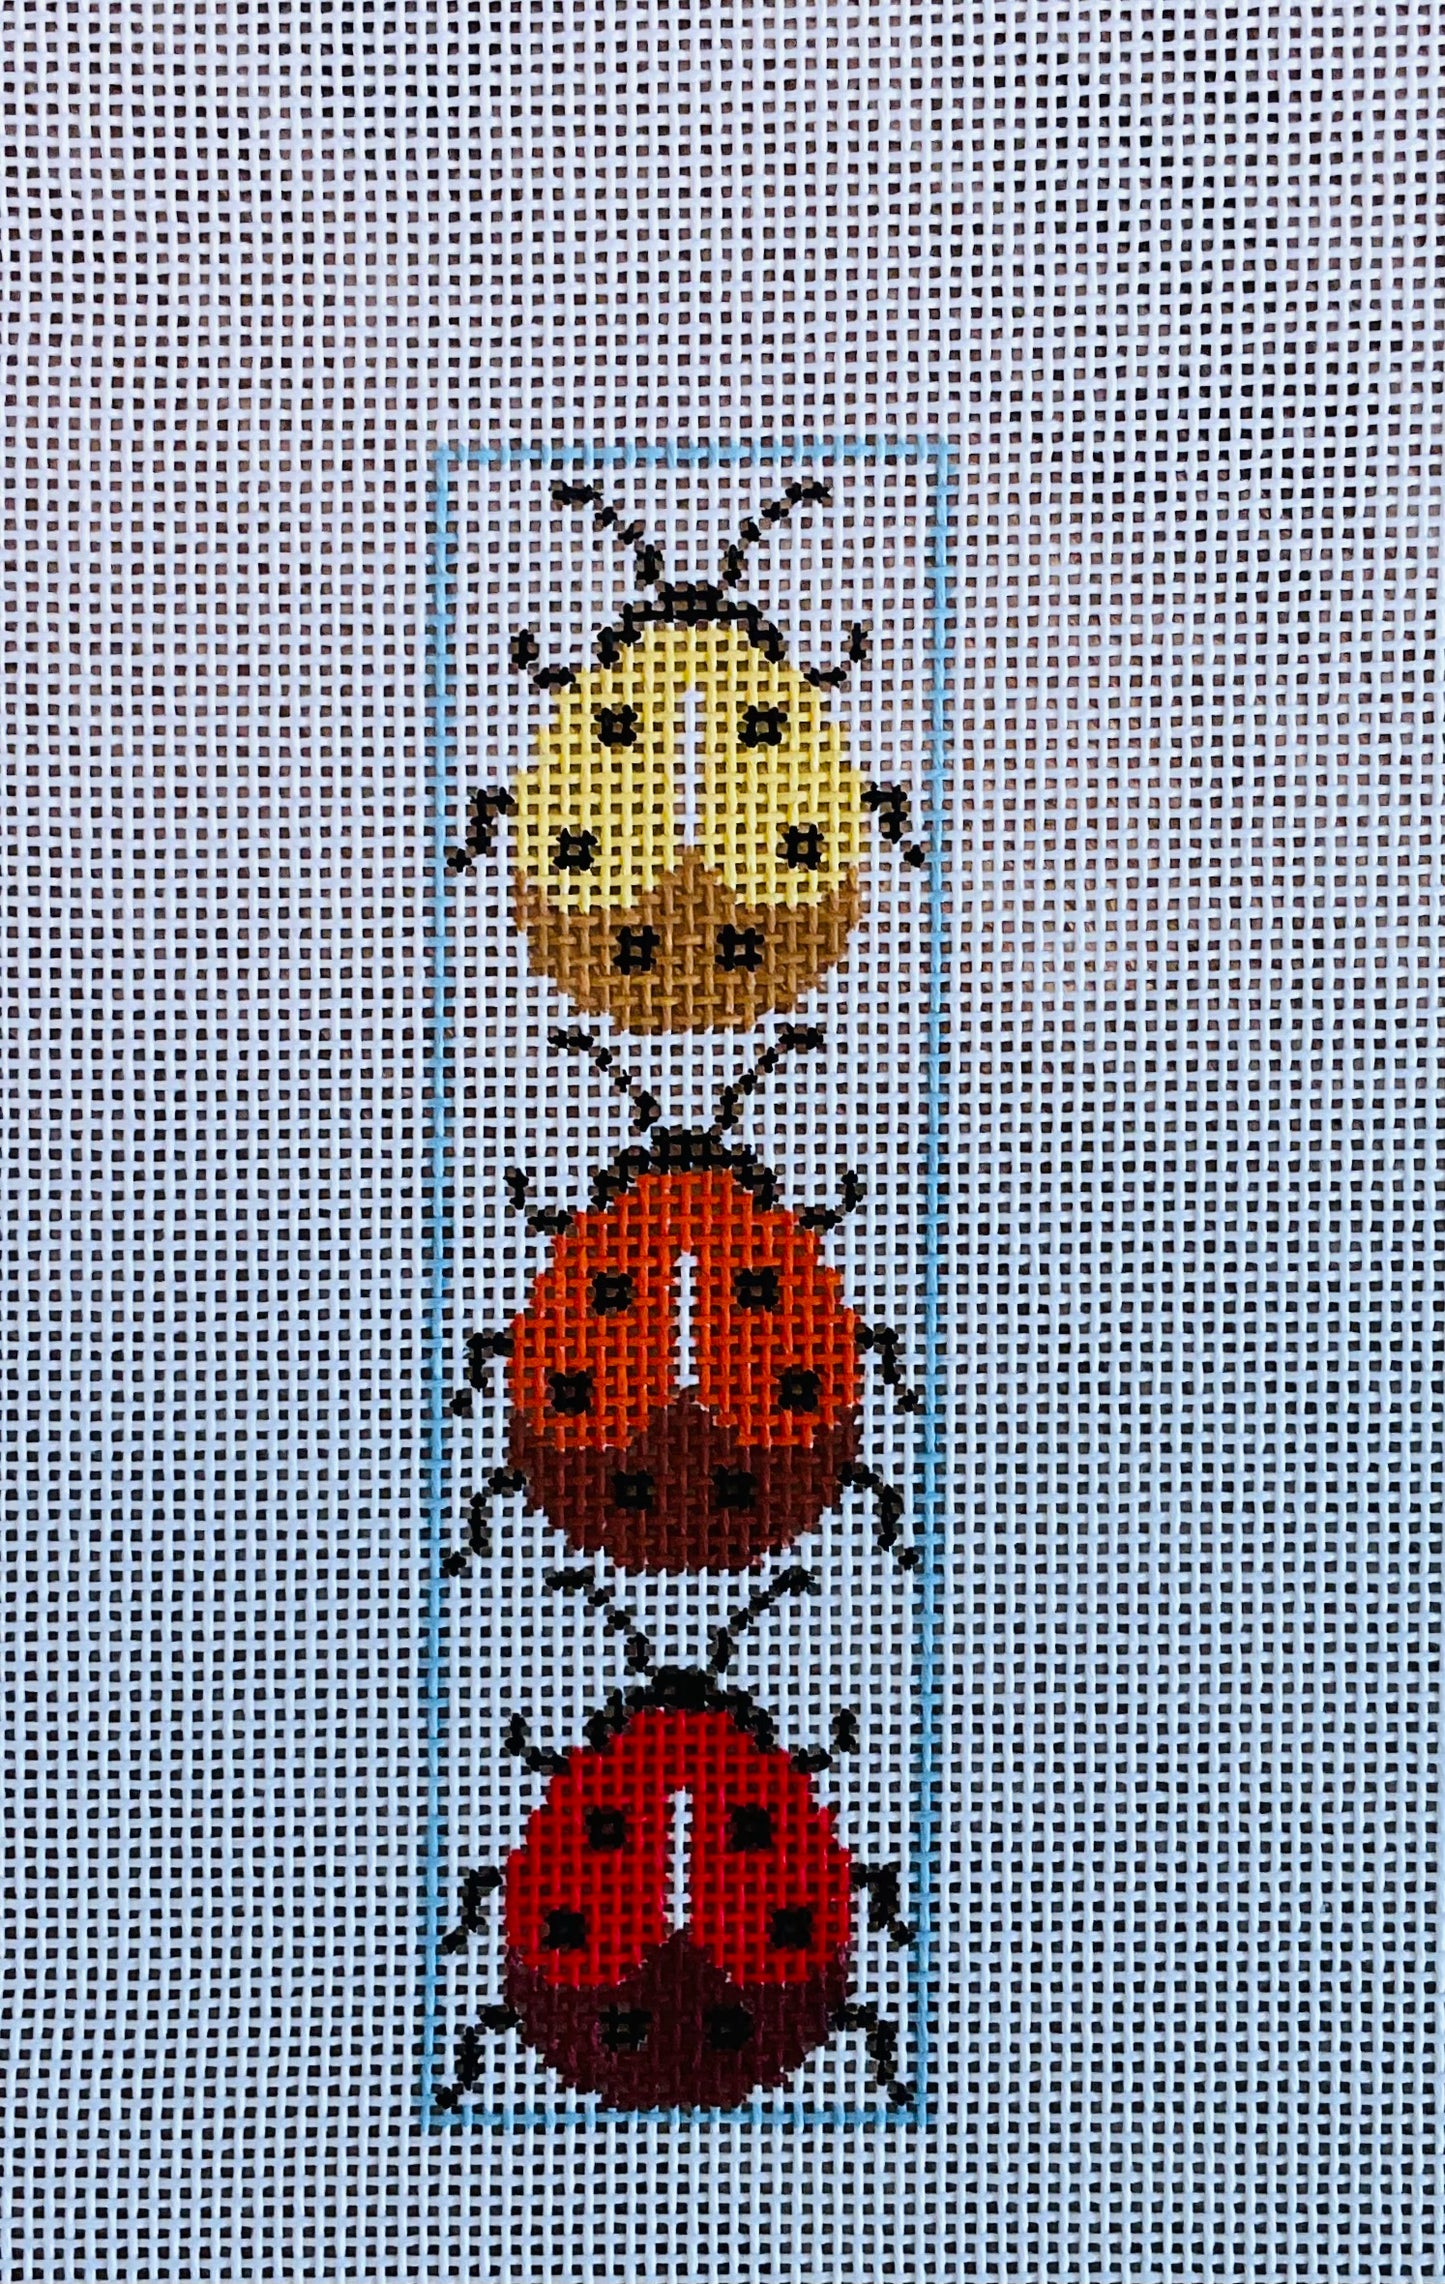 Bookmark Three Large Ladybugs